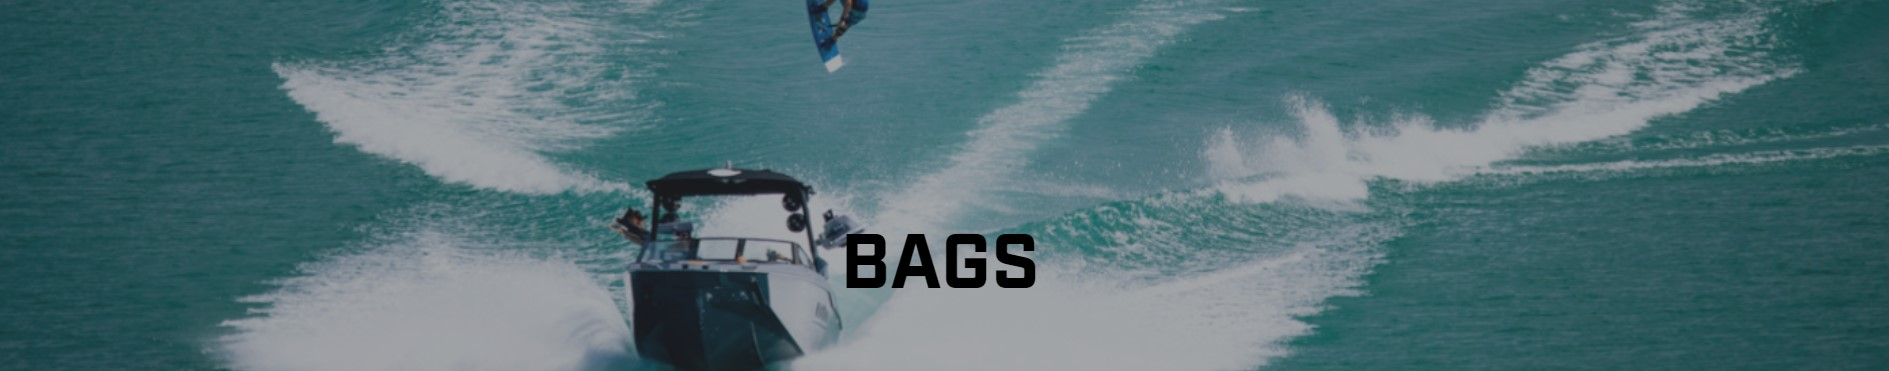 Boardbags & Lugage